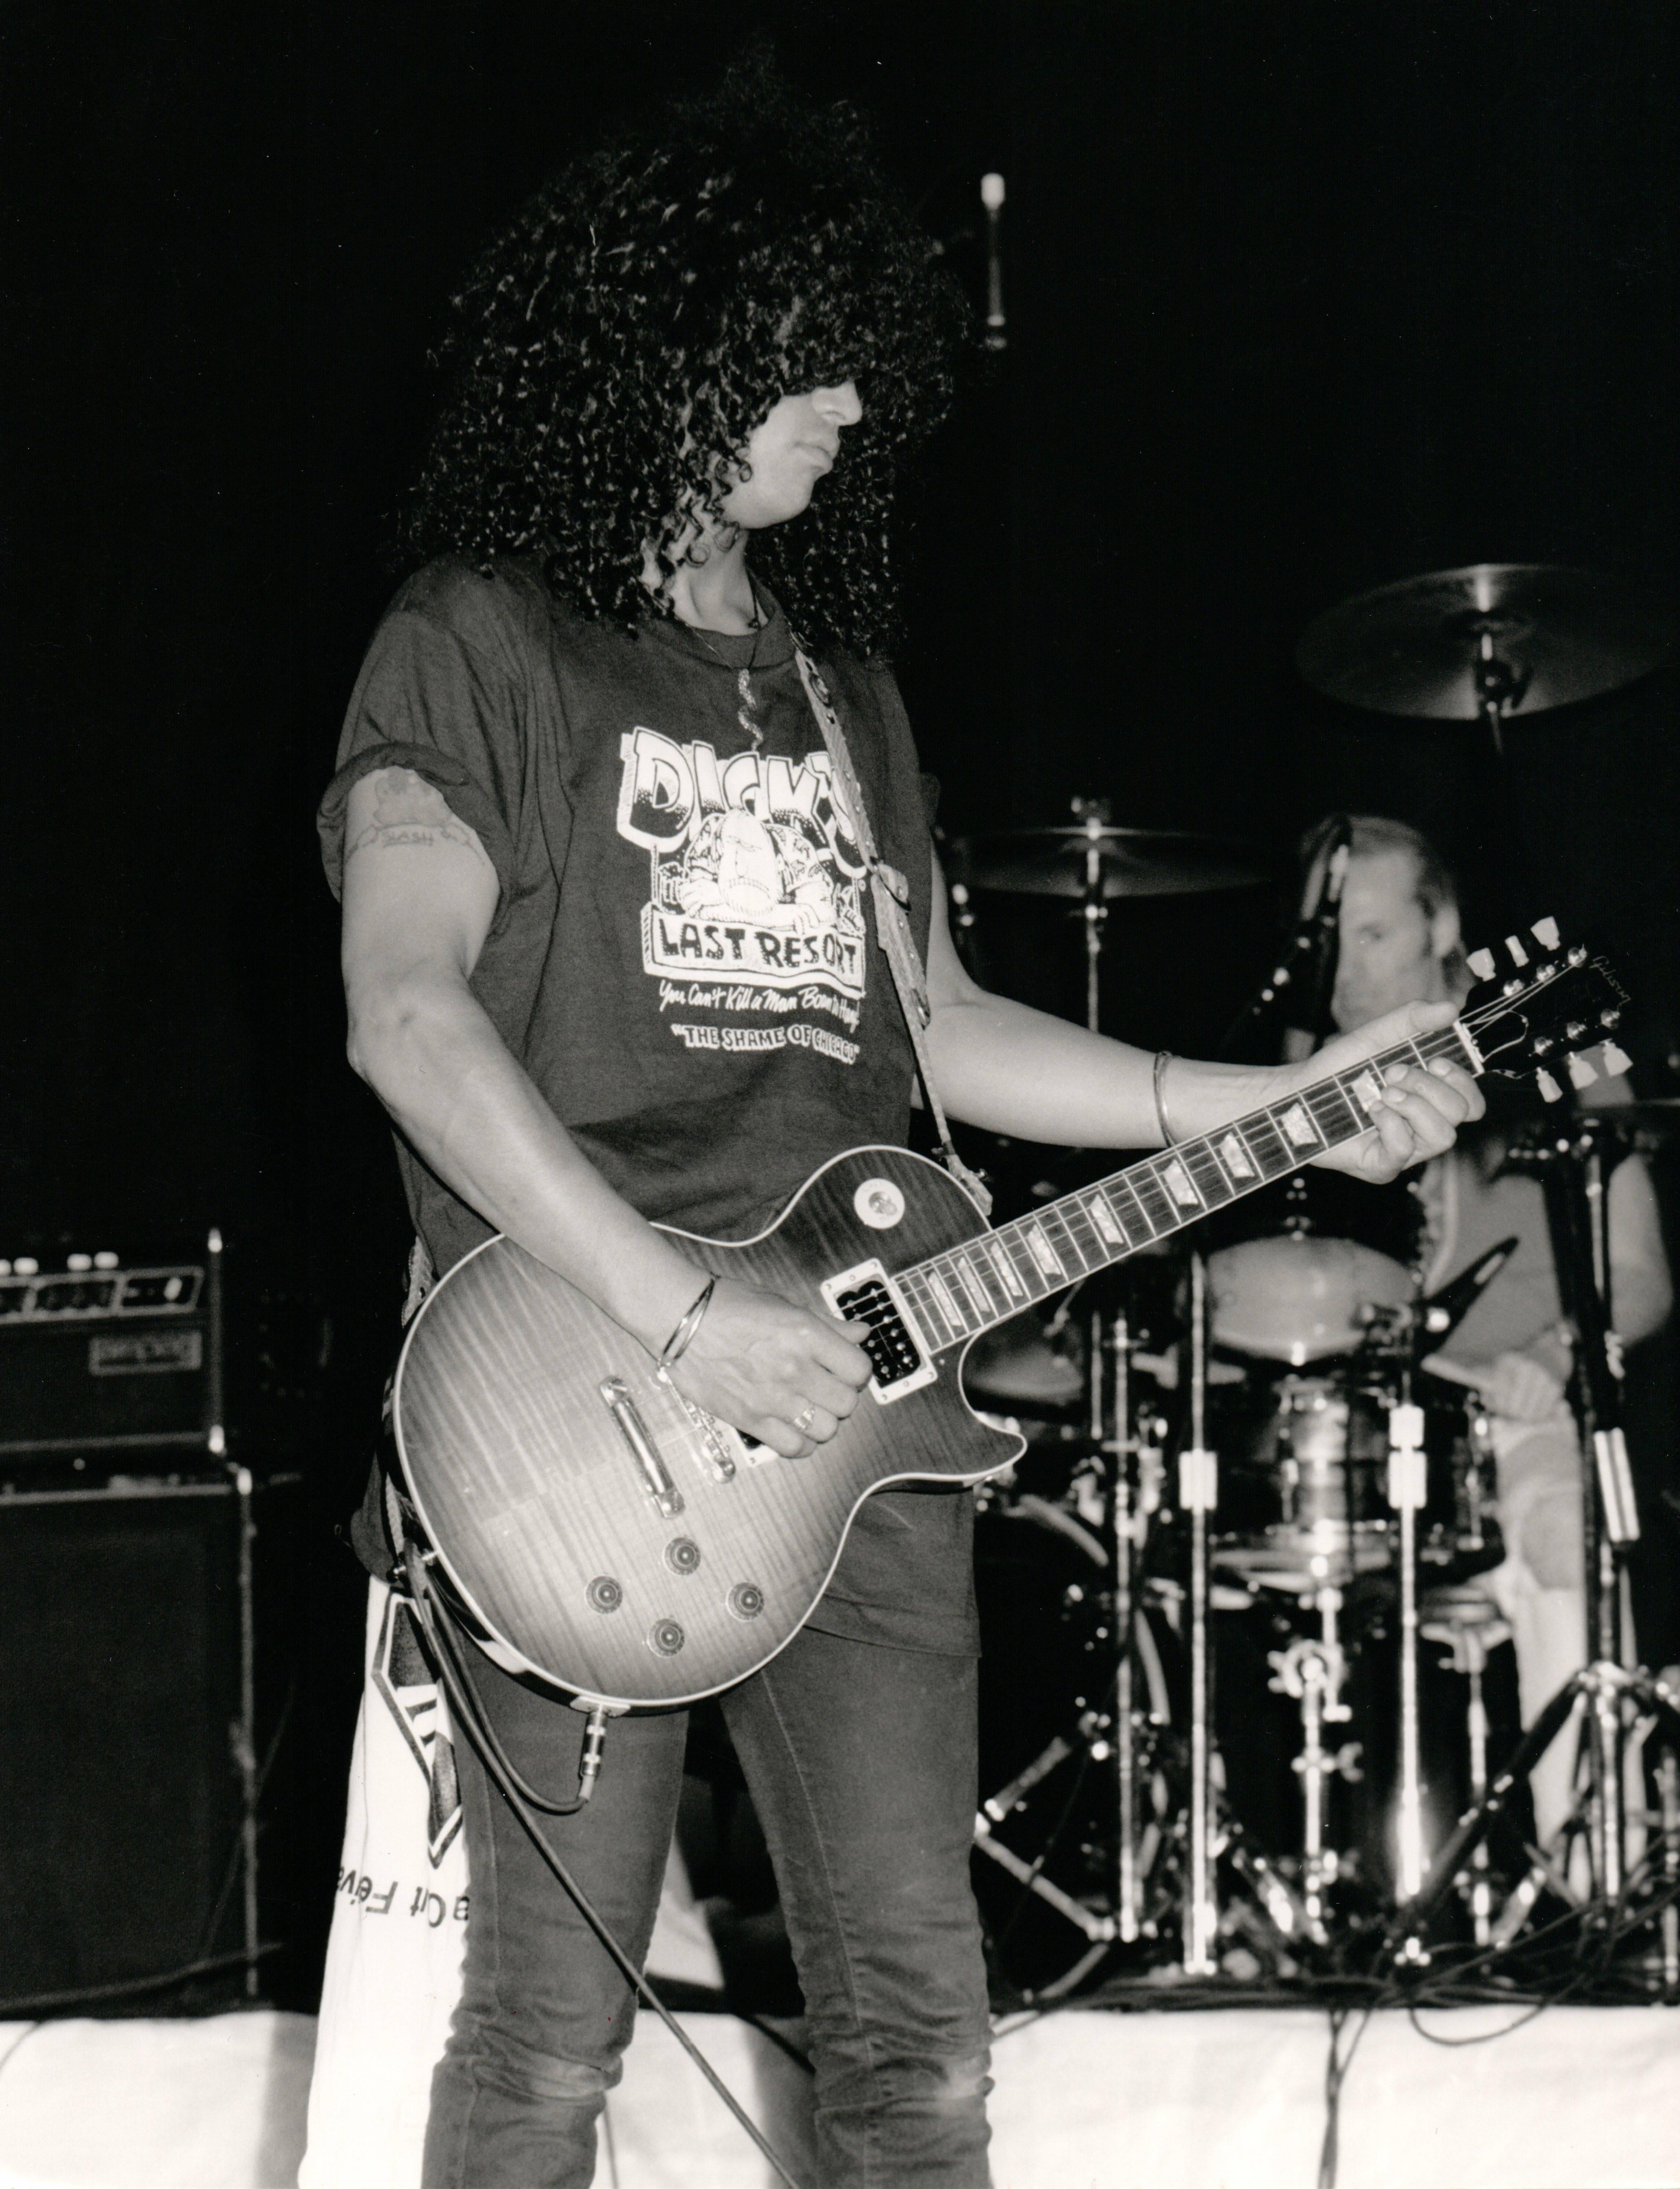 Greg De Guire Portrait Photograph - Guns N' Roses Performing at Benefit Vintage Original Photograph